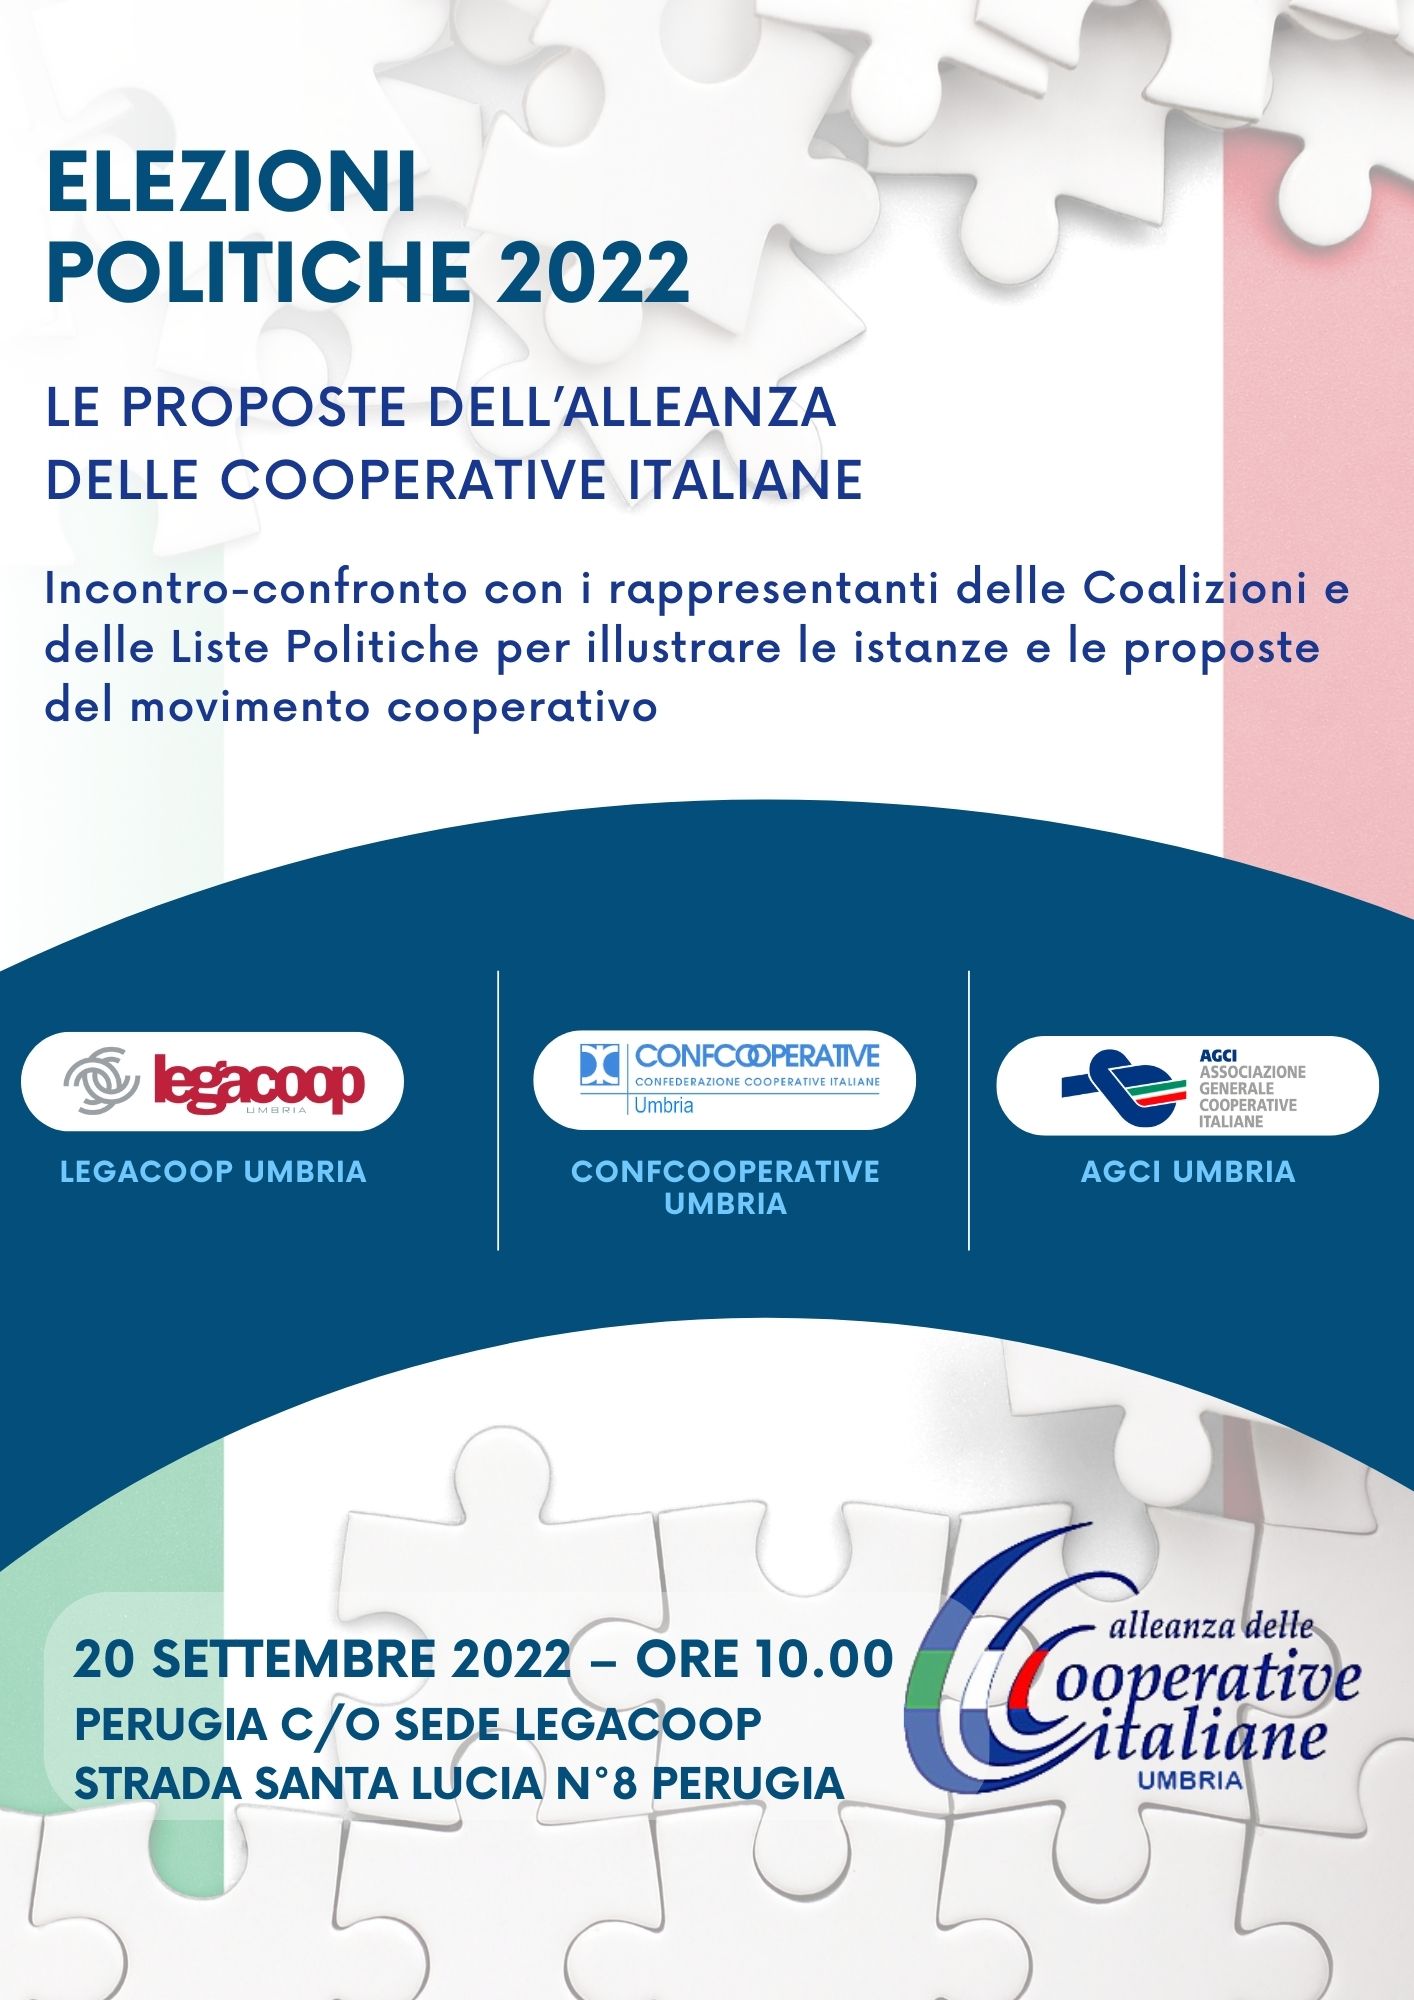 Elezioni politiche del 25 settembre 2022: l’Alleanza delle Cooperative Italiane Umbria incontra i candidati